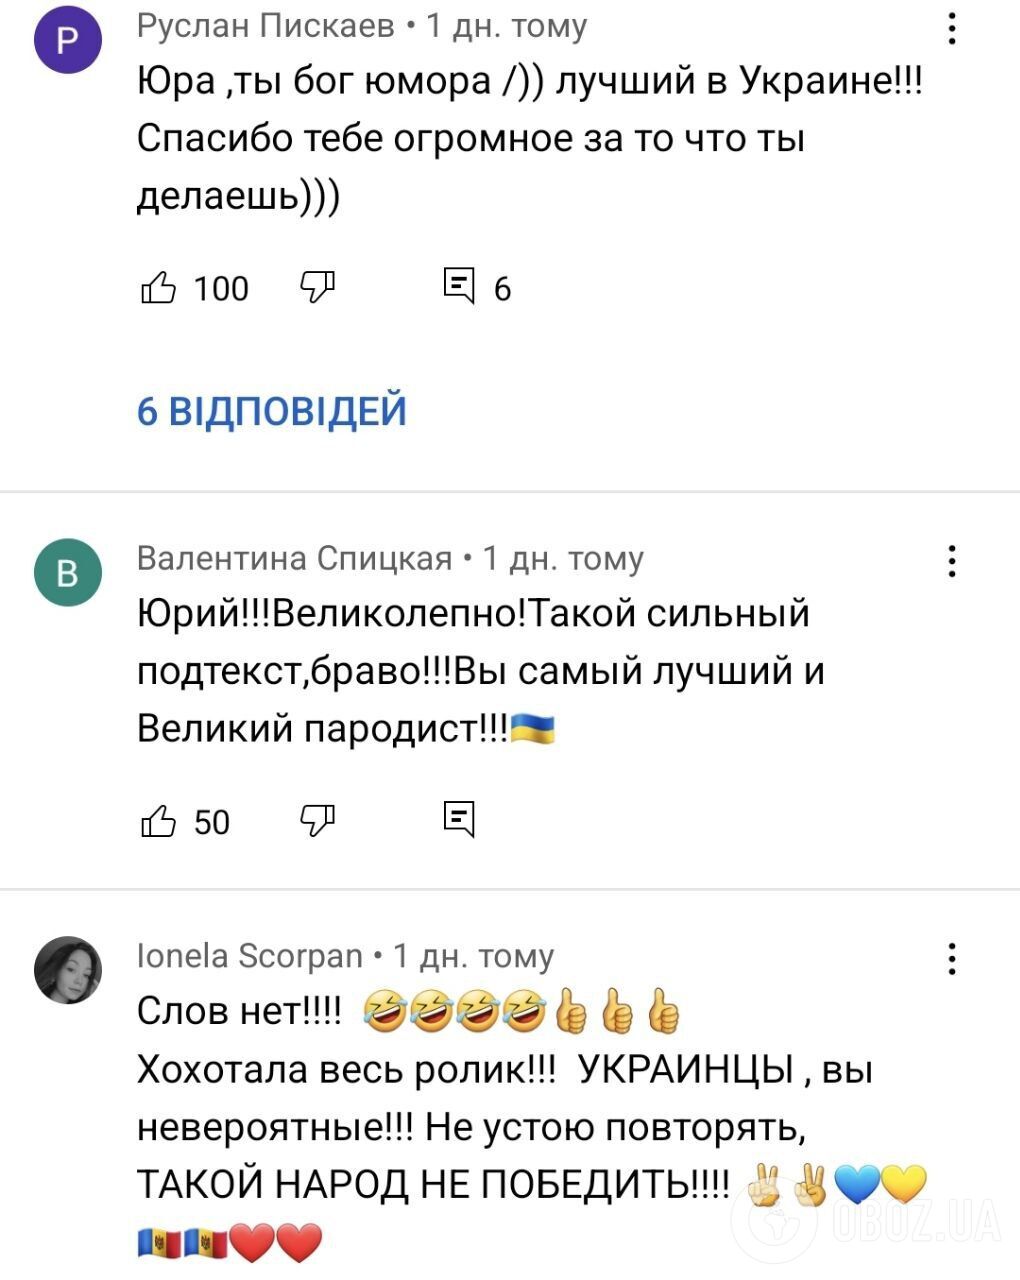 Скриншоти коментарів під відео Юрія Великого.